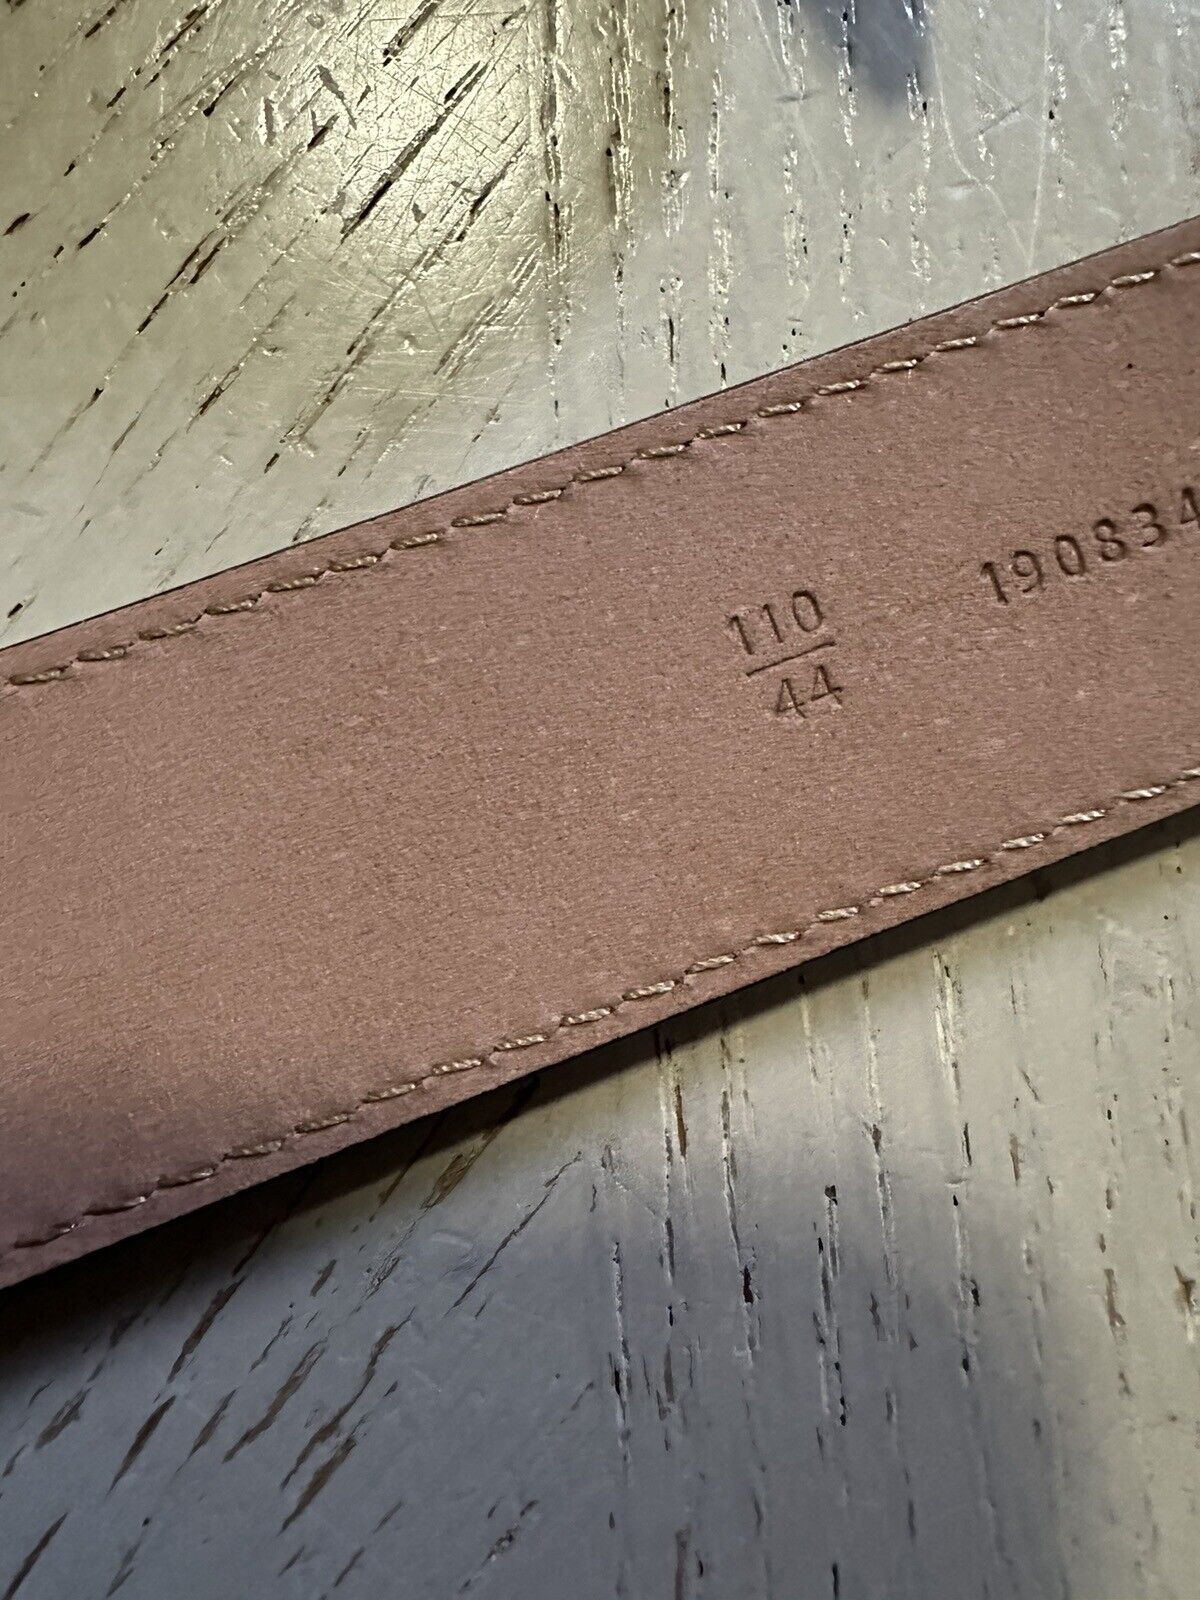 New  Fendi Men’s Grained Leather Belt Black 110/44 Italy